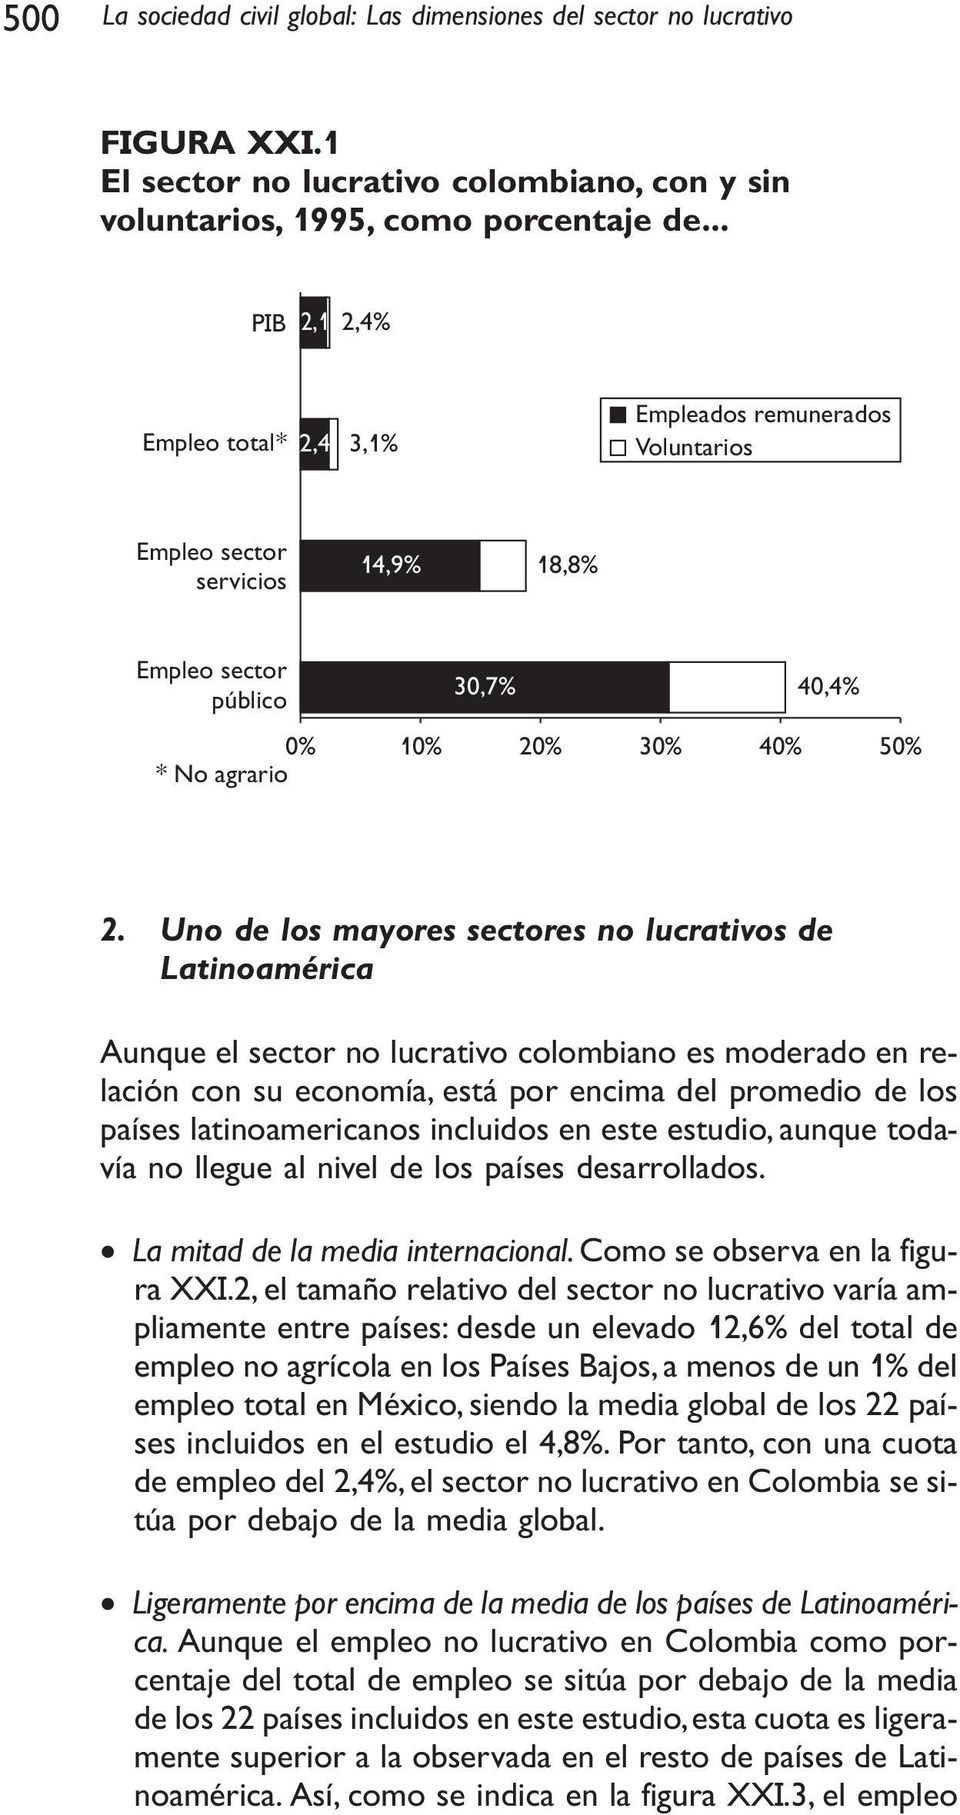 Uno de los mayores sectores no lucrativos de Latinoamérica Aunque el sector no lucrativo colombiano es moderado en relación con su economía, está por encima del promedio de los países